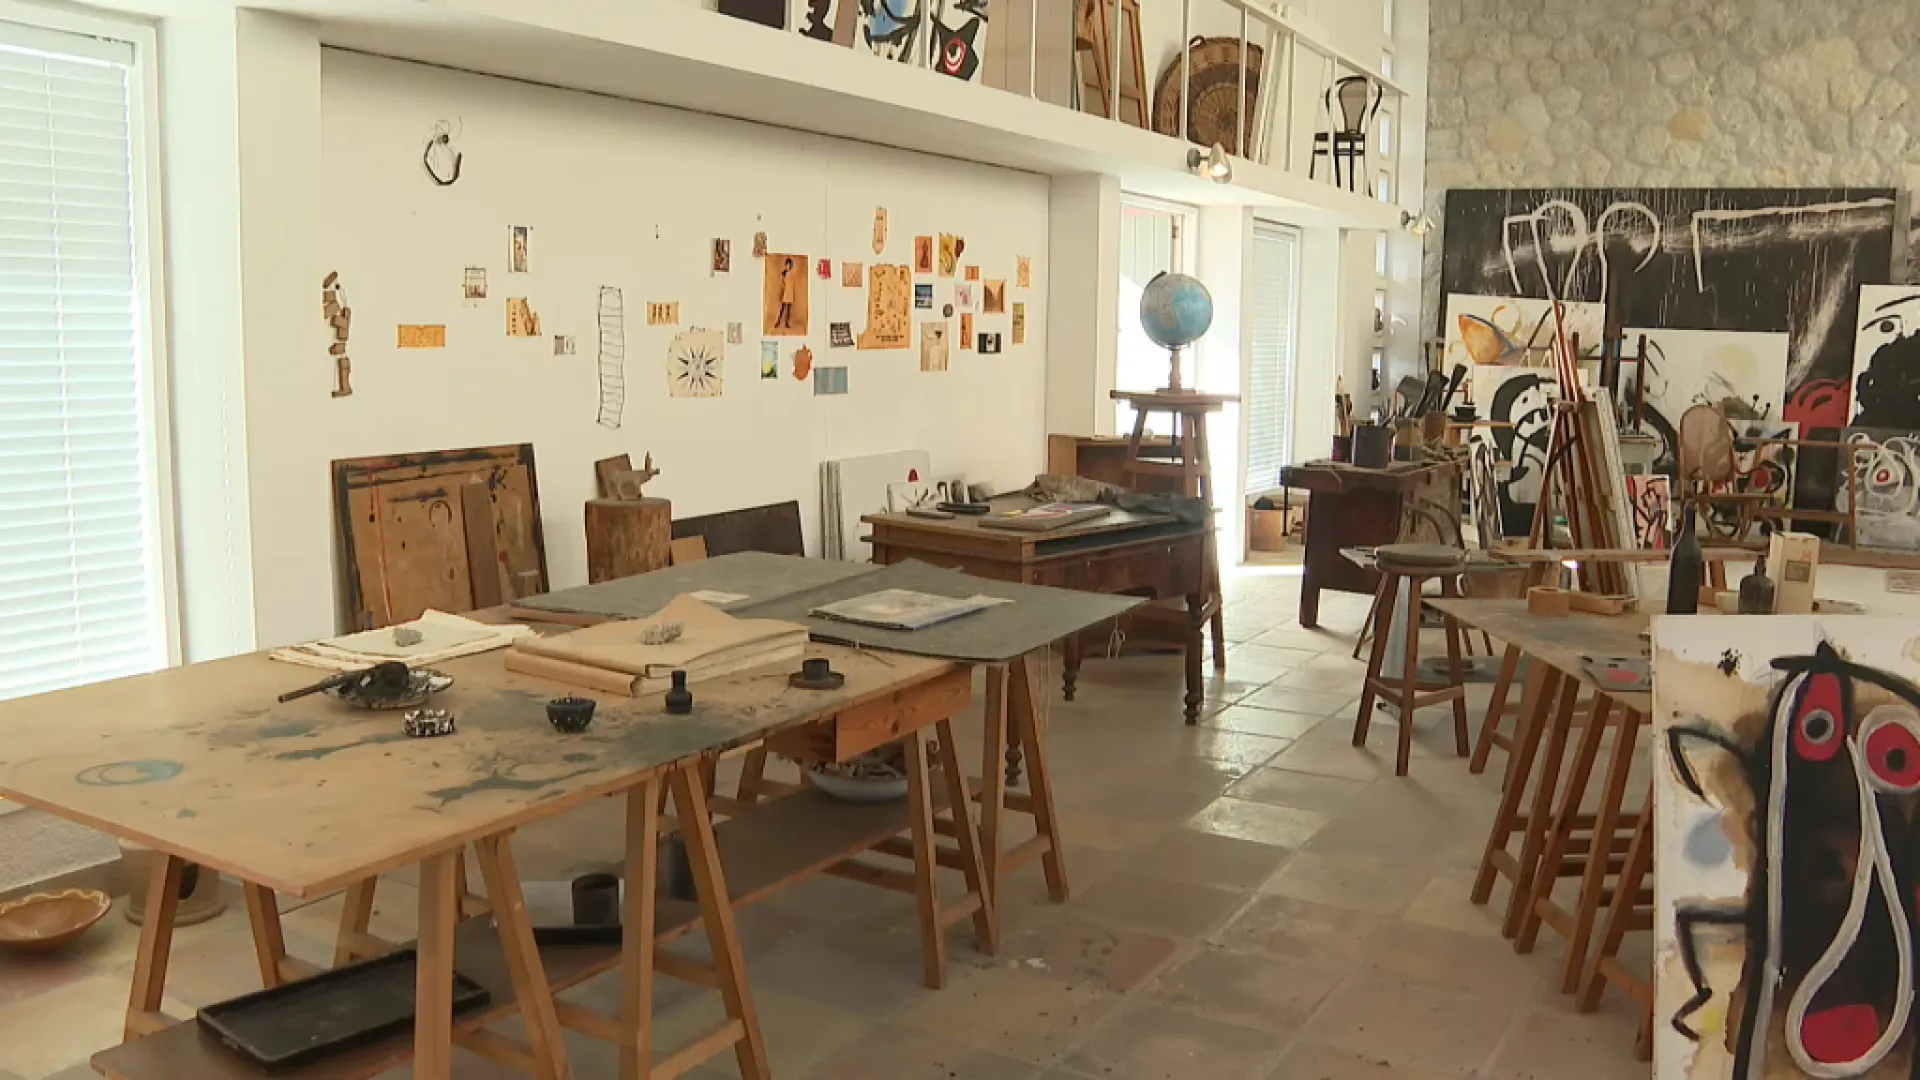 El taller de Joan Miró, primer edifici a les Balears a rebre el distintiu d’arquitectura moderna Docomomo